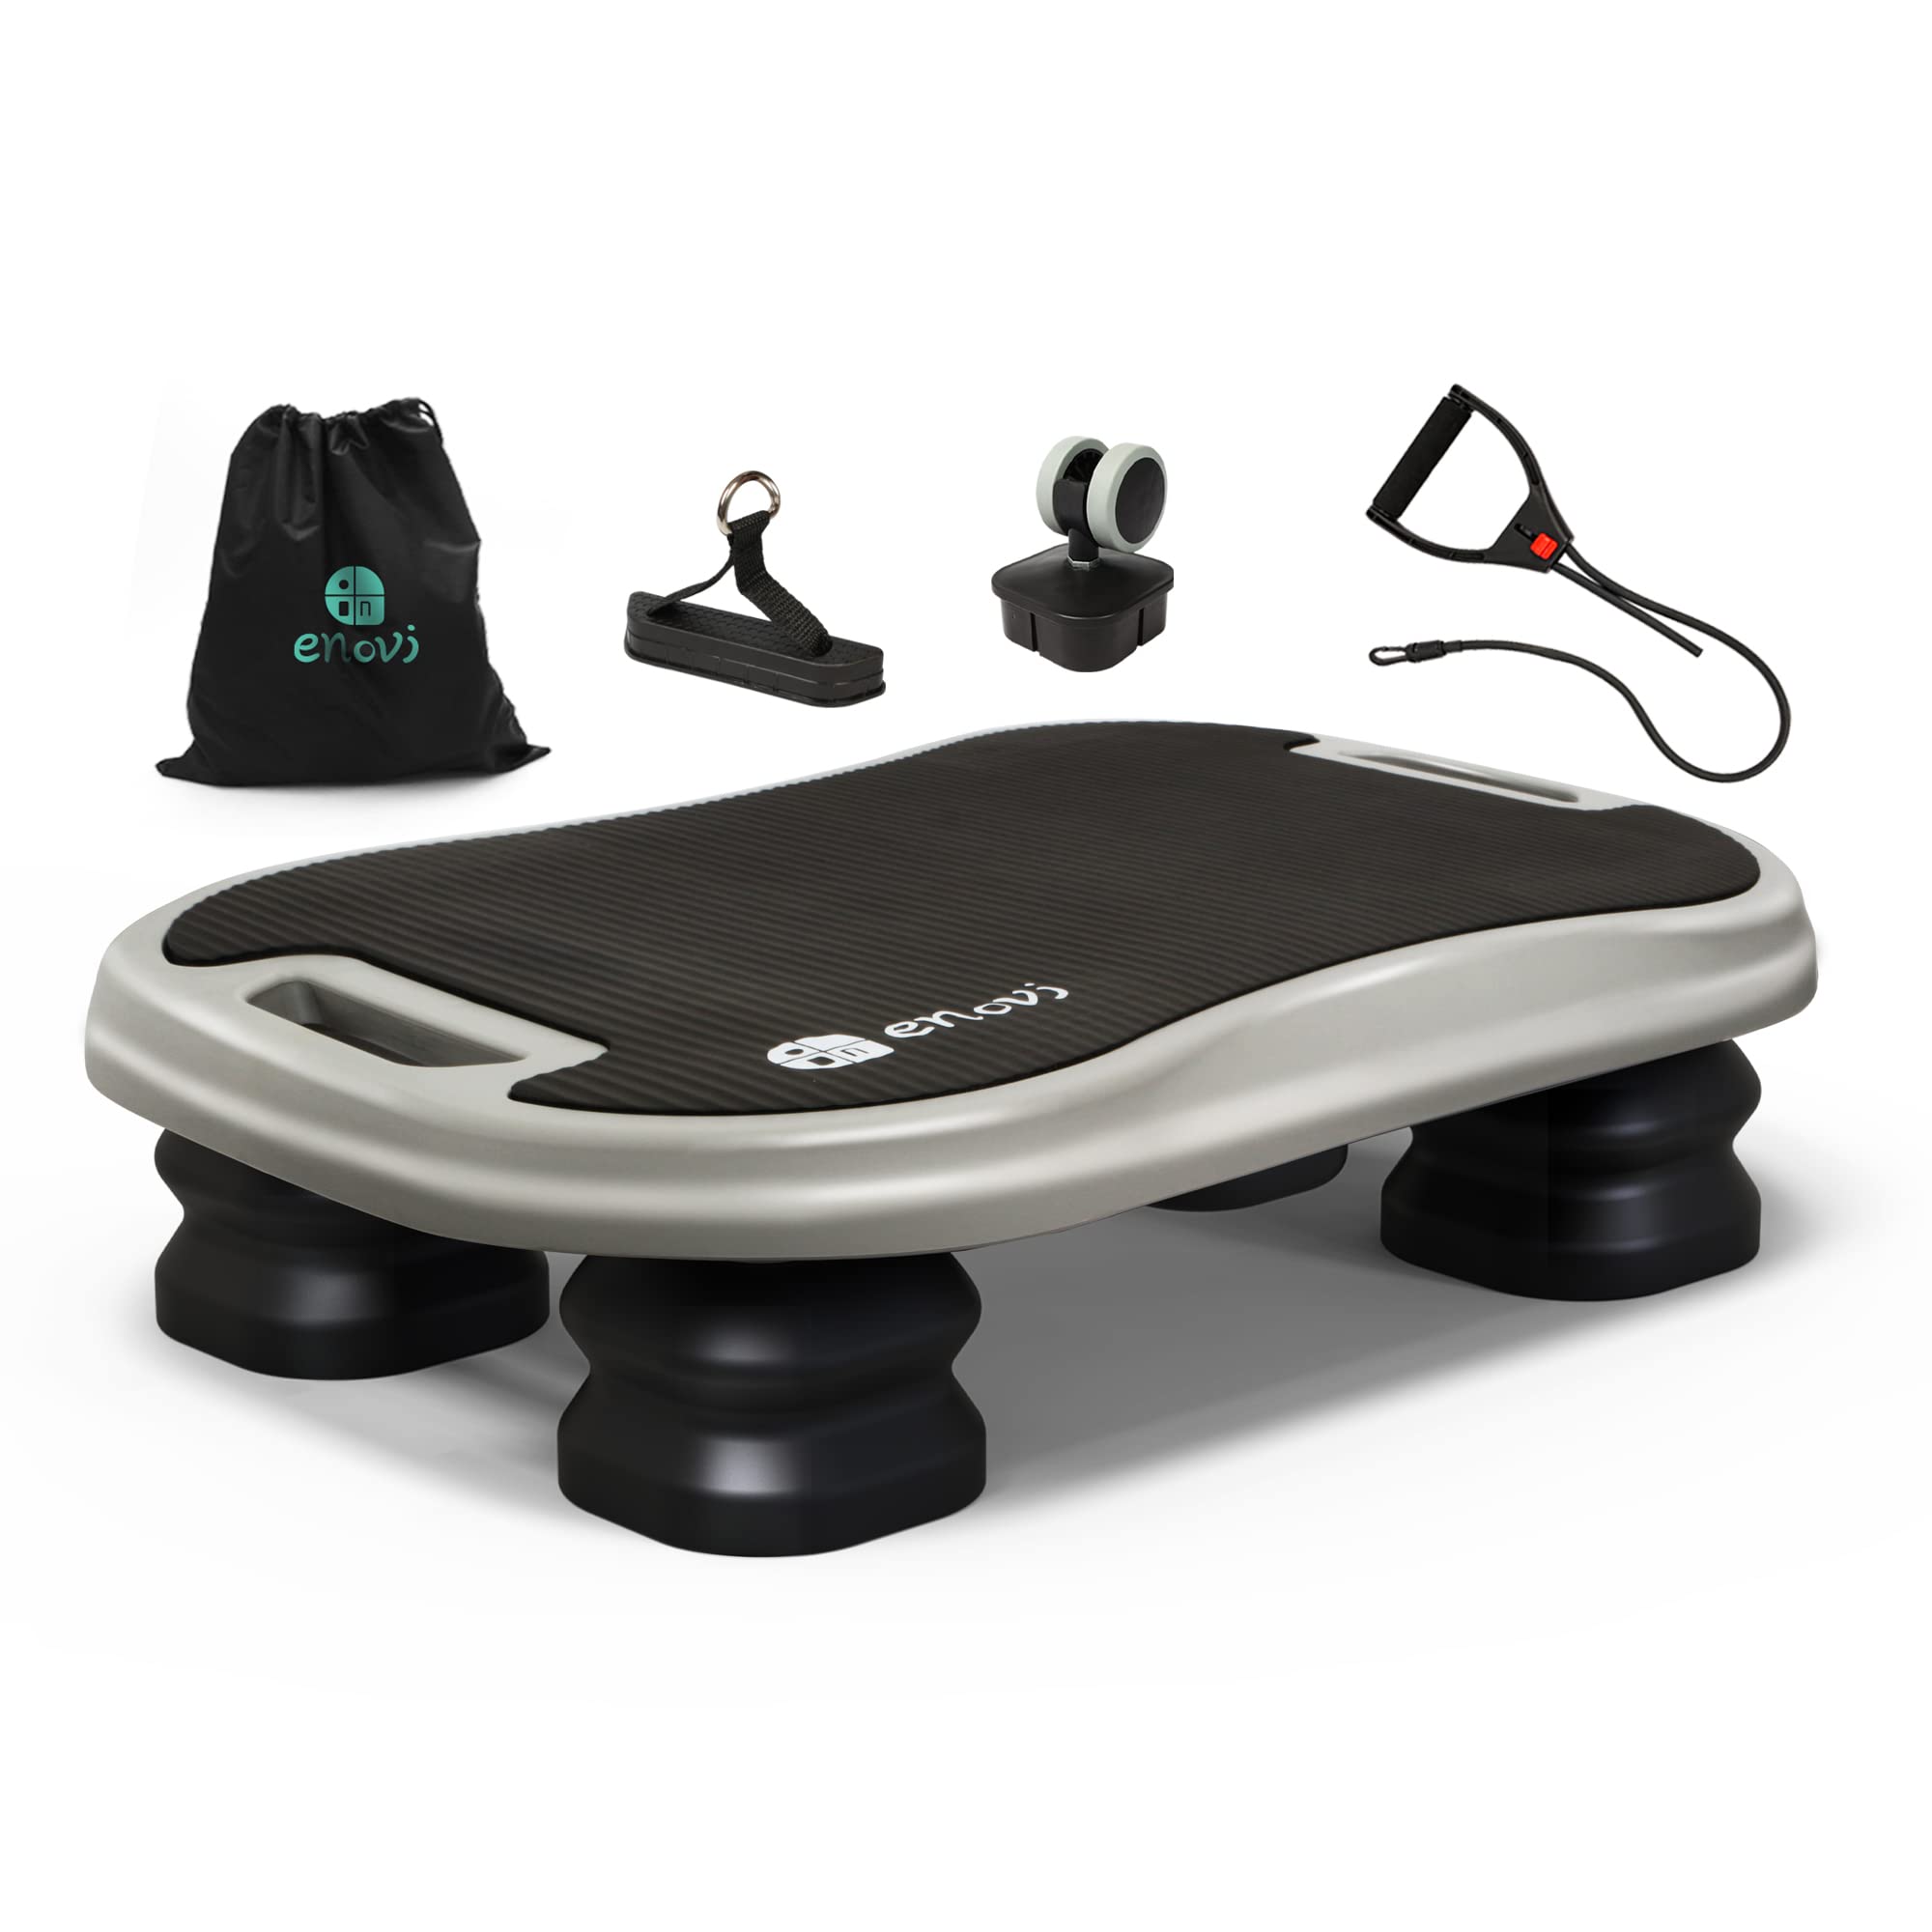 送料無料Enovi Dynamic Balance Aerobic Step Platform Infinite Balance Board Multifunctional Home Gym Work Out Equipment